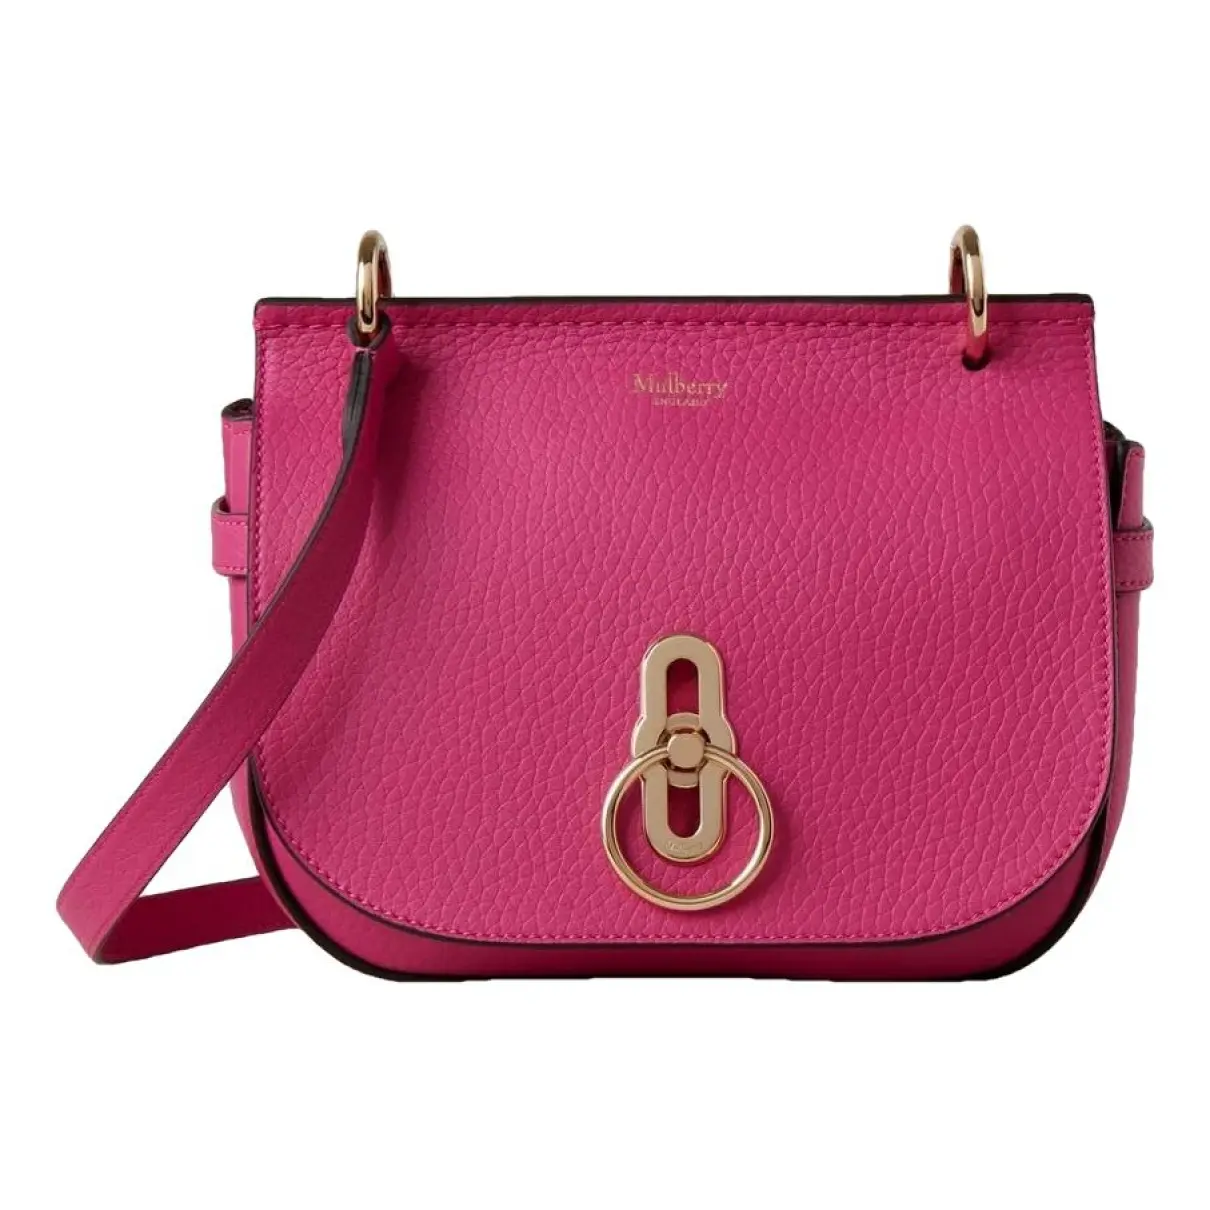 Amberley leather handbag Mulberry